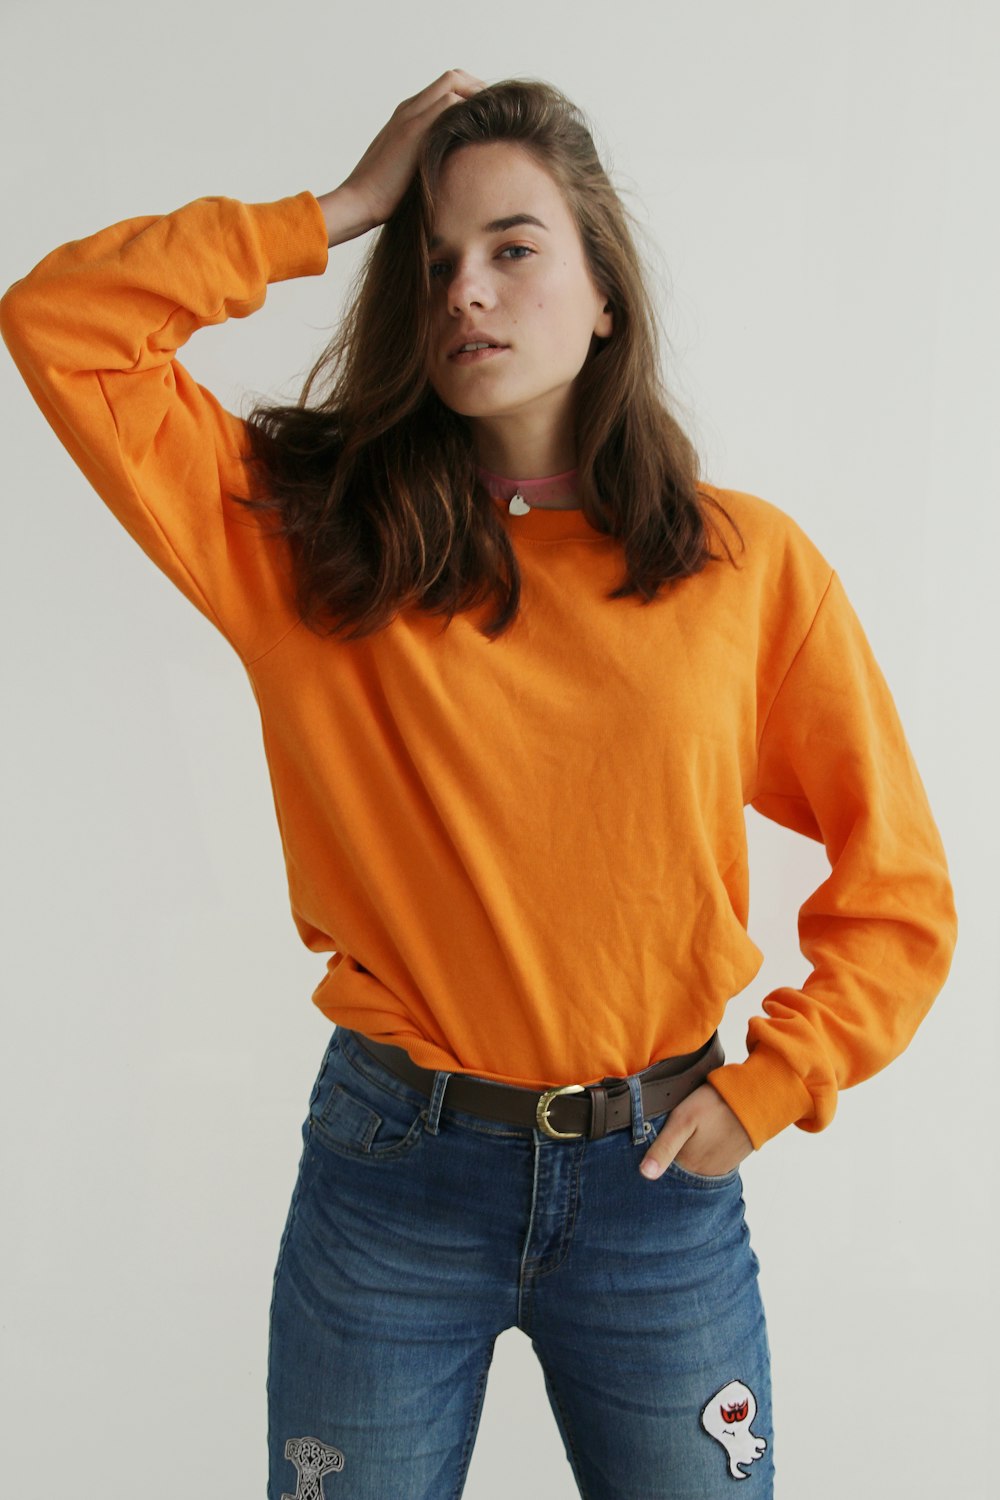 オレンジ色のクルーネックのスウェットシャツを着て、右手を頭に置いて立っている女性